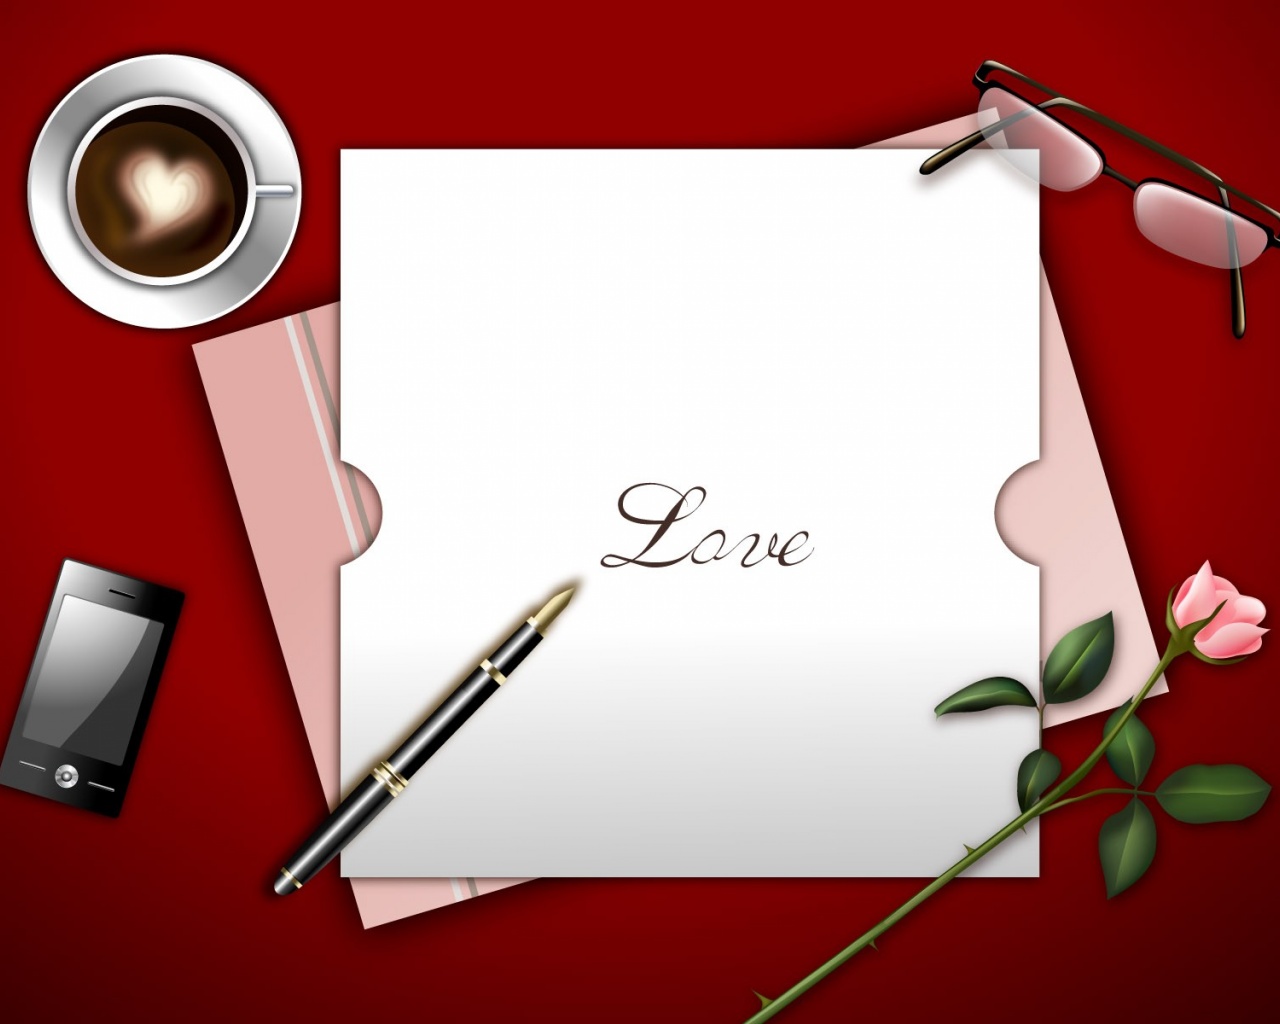 Love Letter Hd Pictures - Frases Linda Para El Día De Los Enamorados - HD Wallpaper 